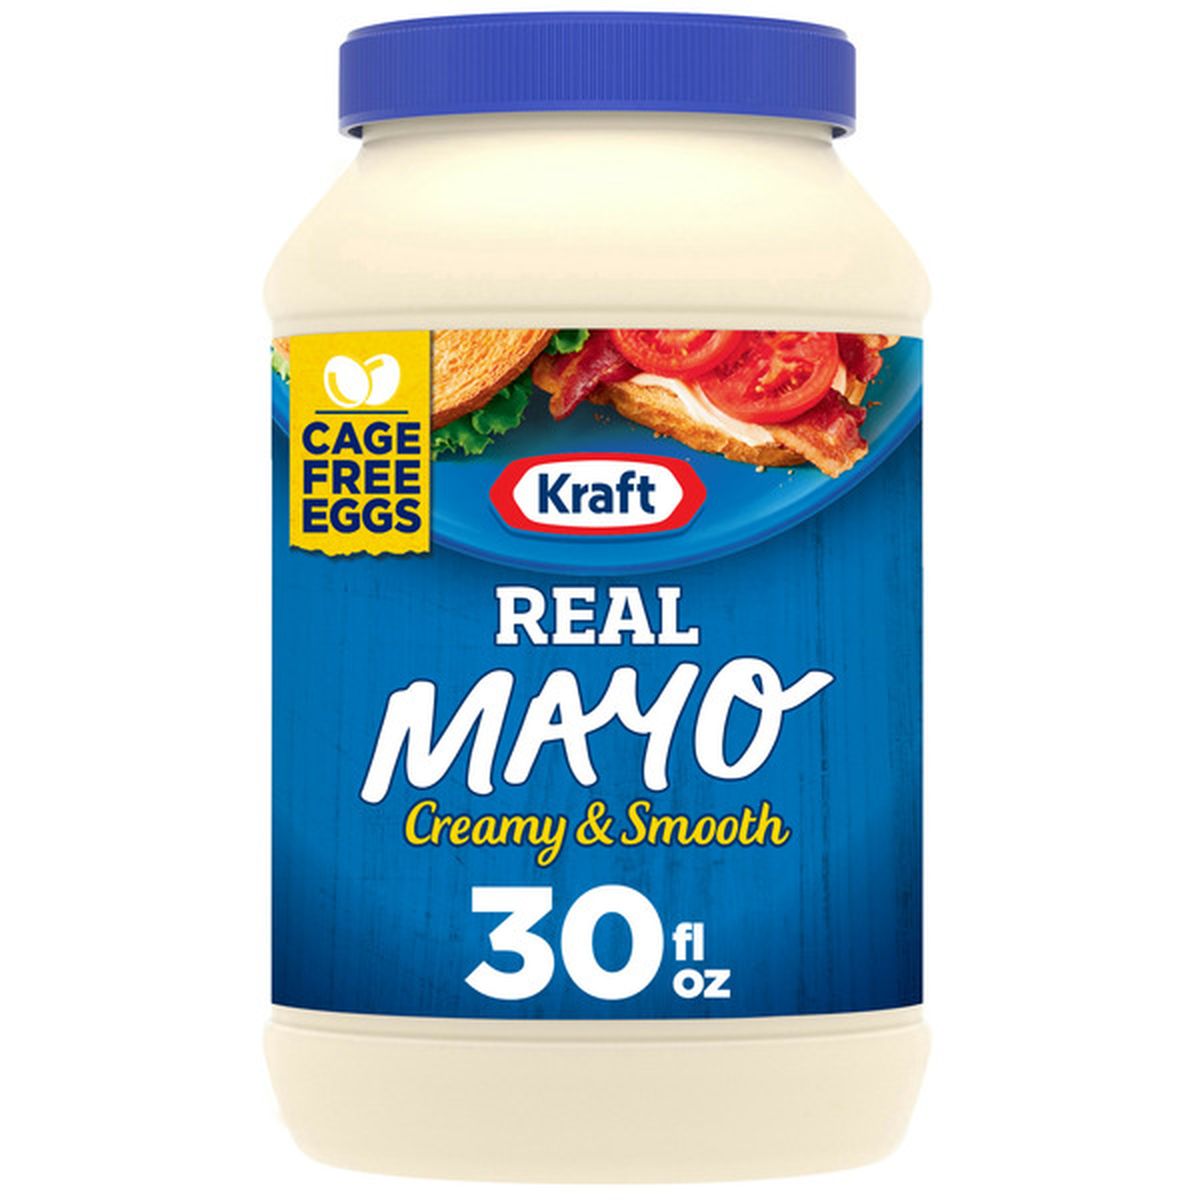 Real Mayonnaise